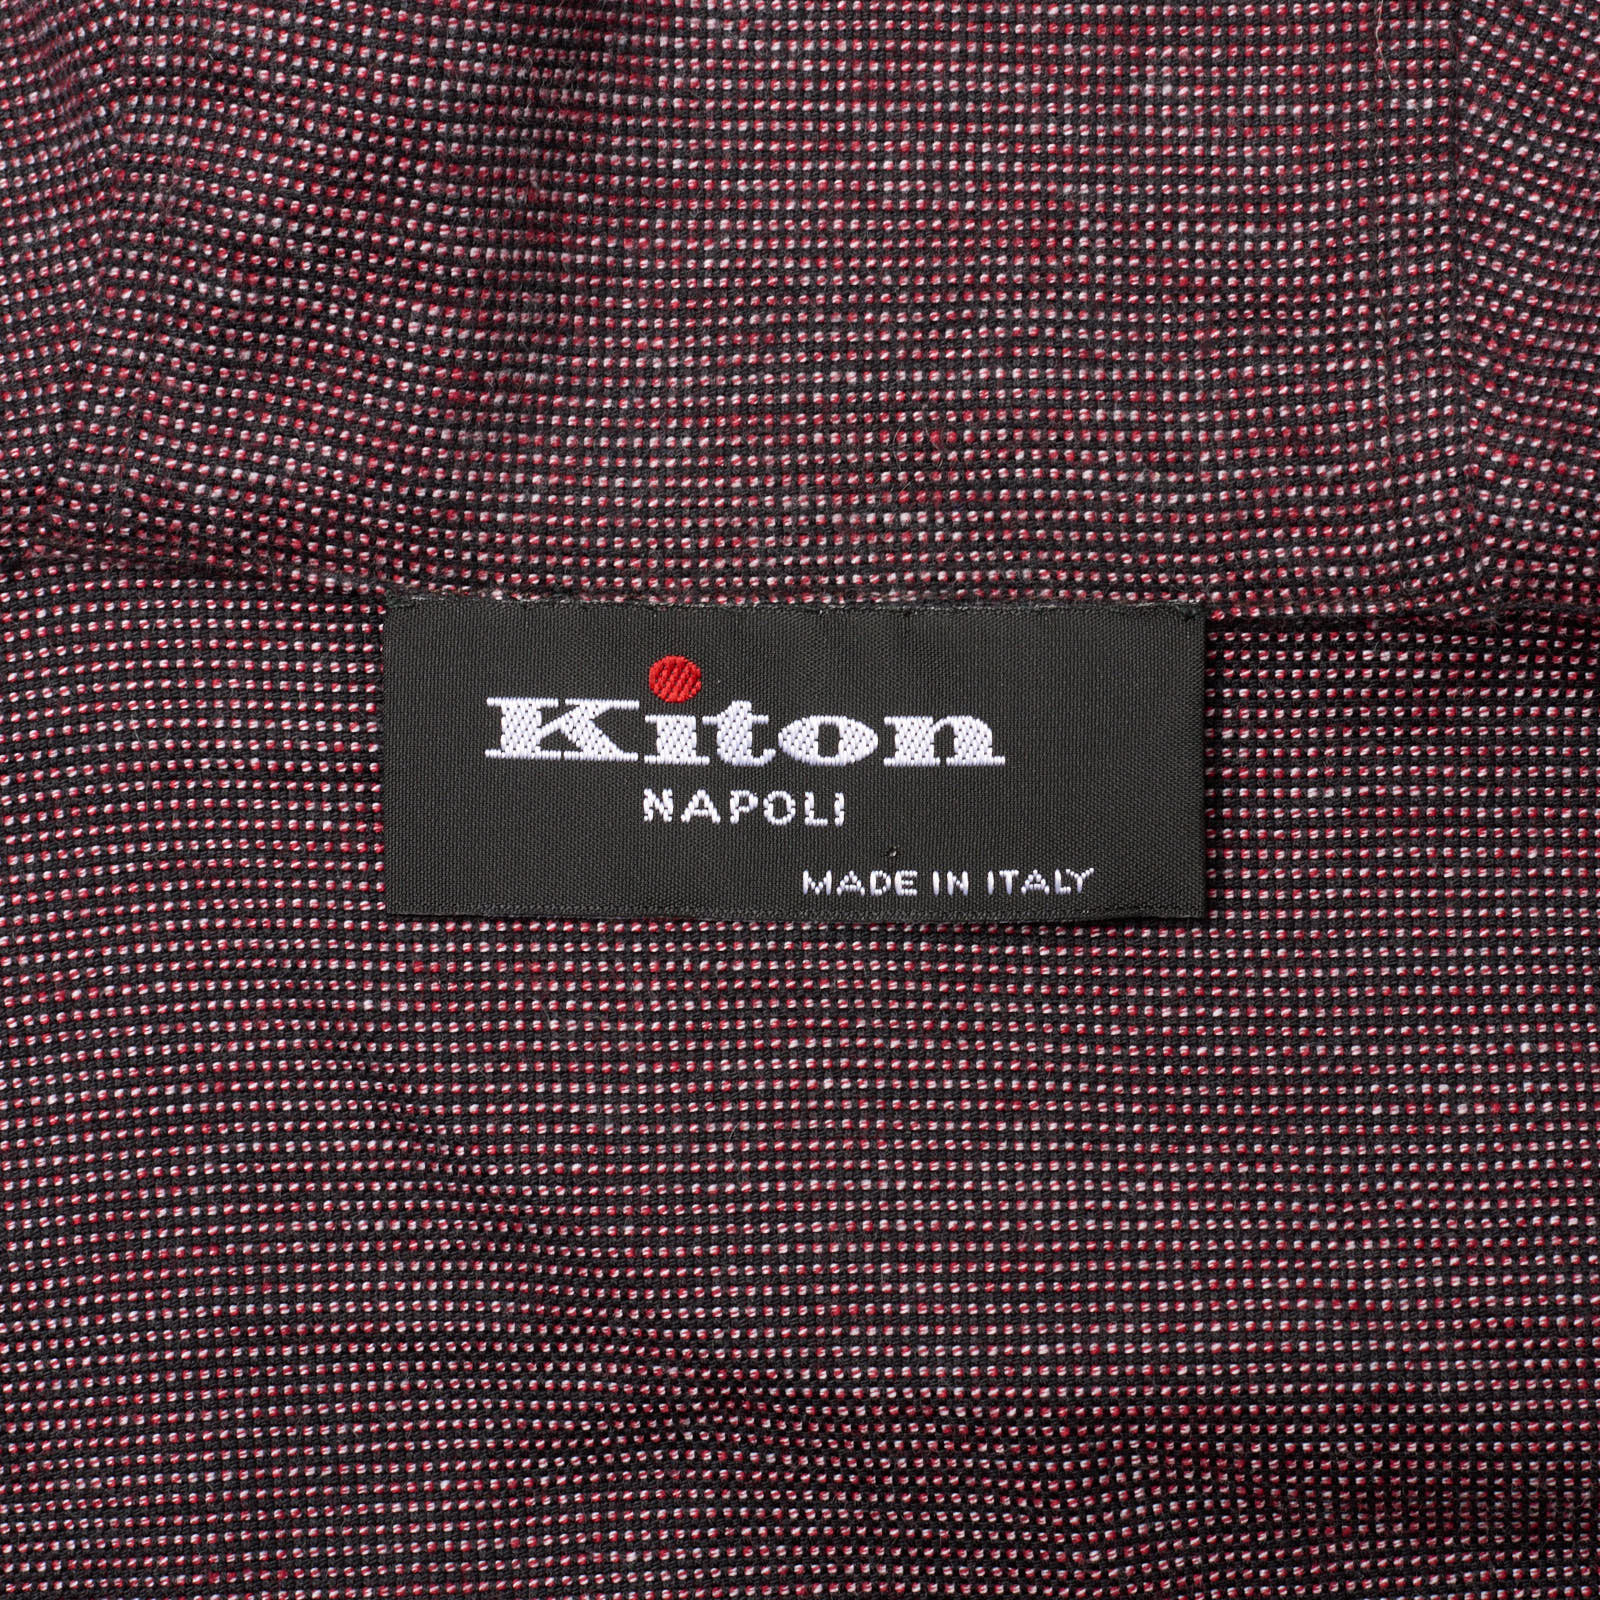 KITON Napoli Maroon Nailhead Cotton Hooded Sweater Hoody EU 46 NEW US 36 S